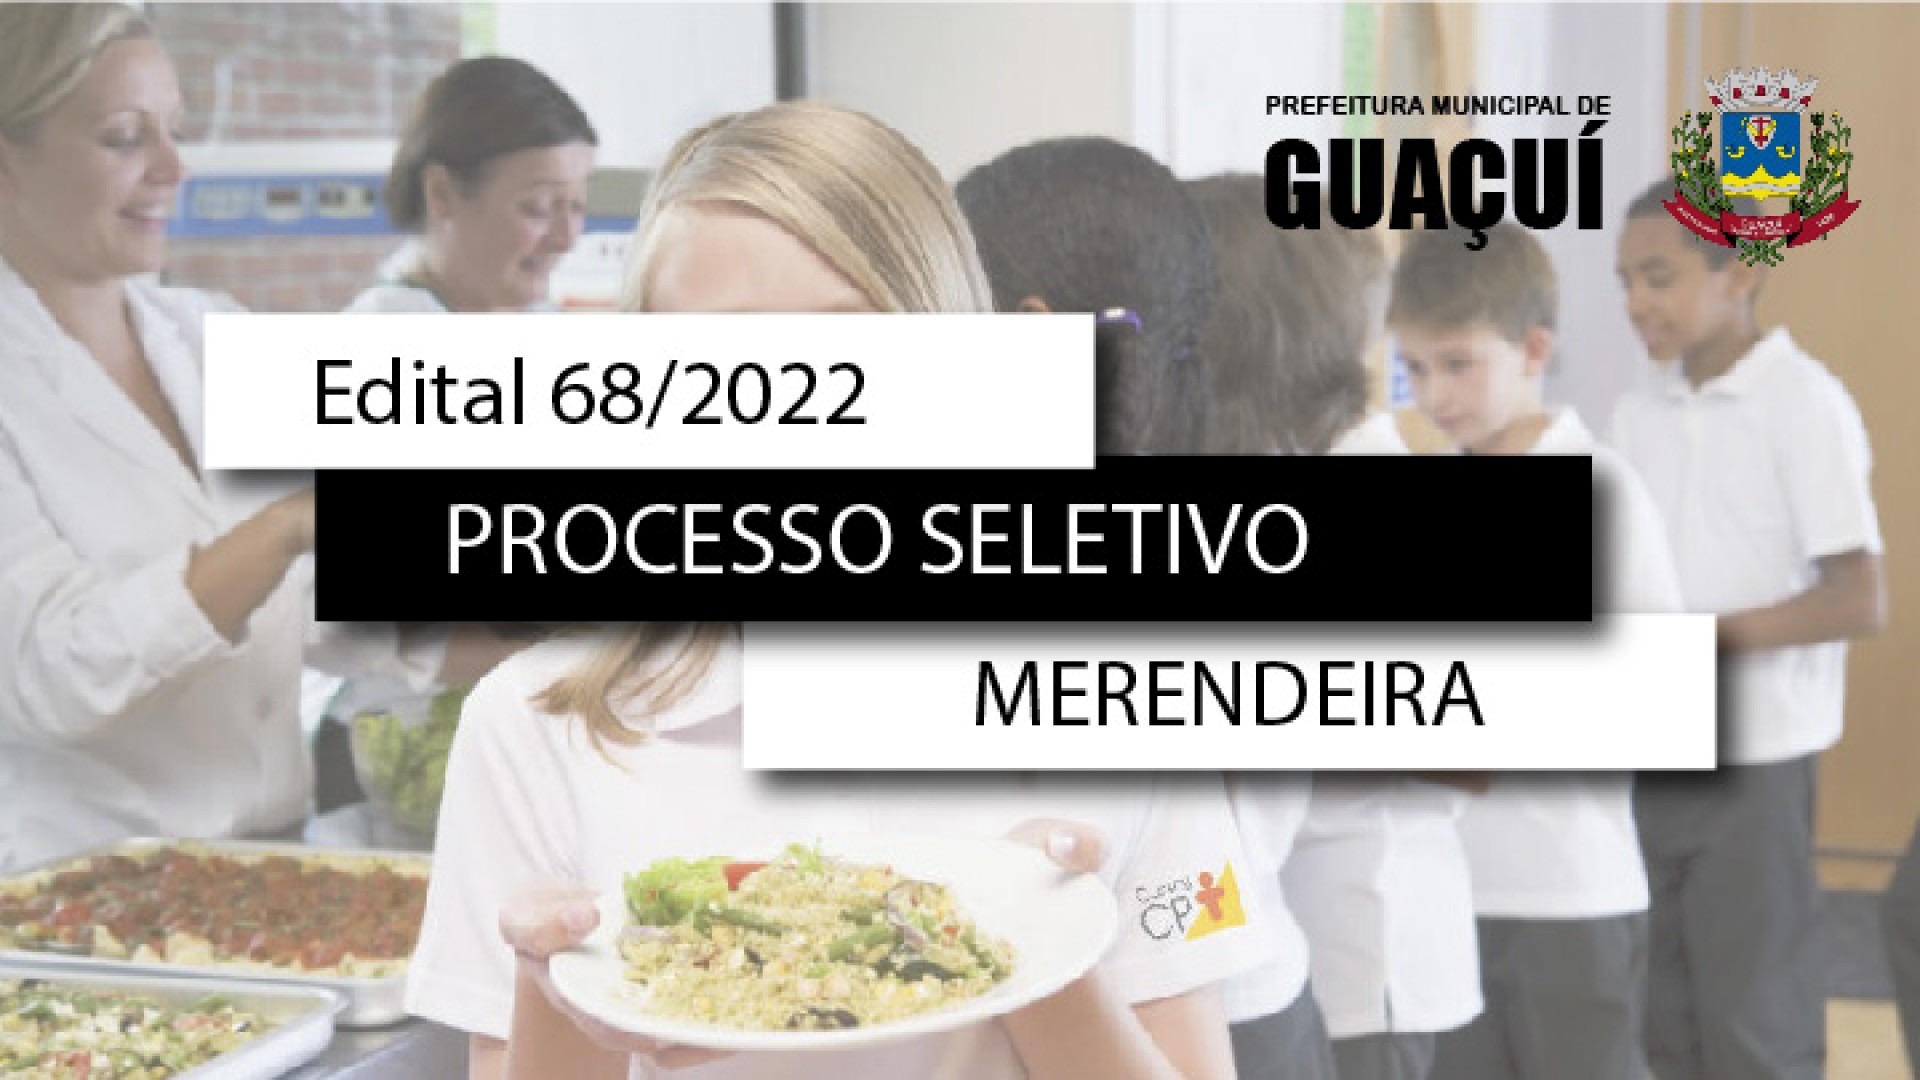 EDITAL EDUCAÇÃO Nº 068/2022 - MERENDEIRA